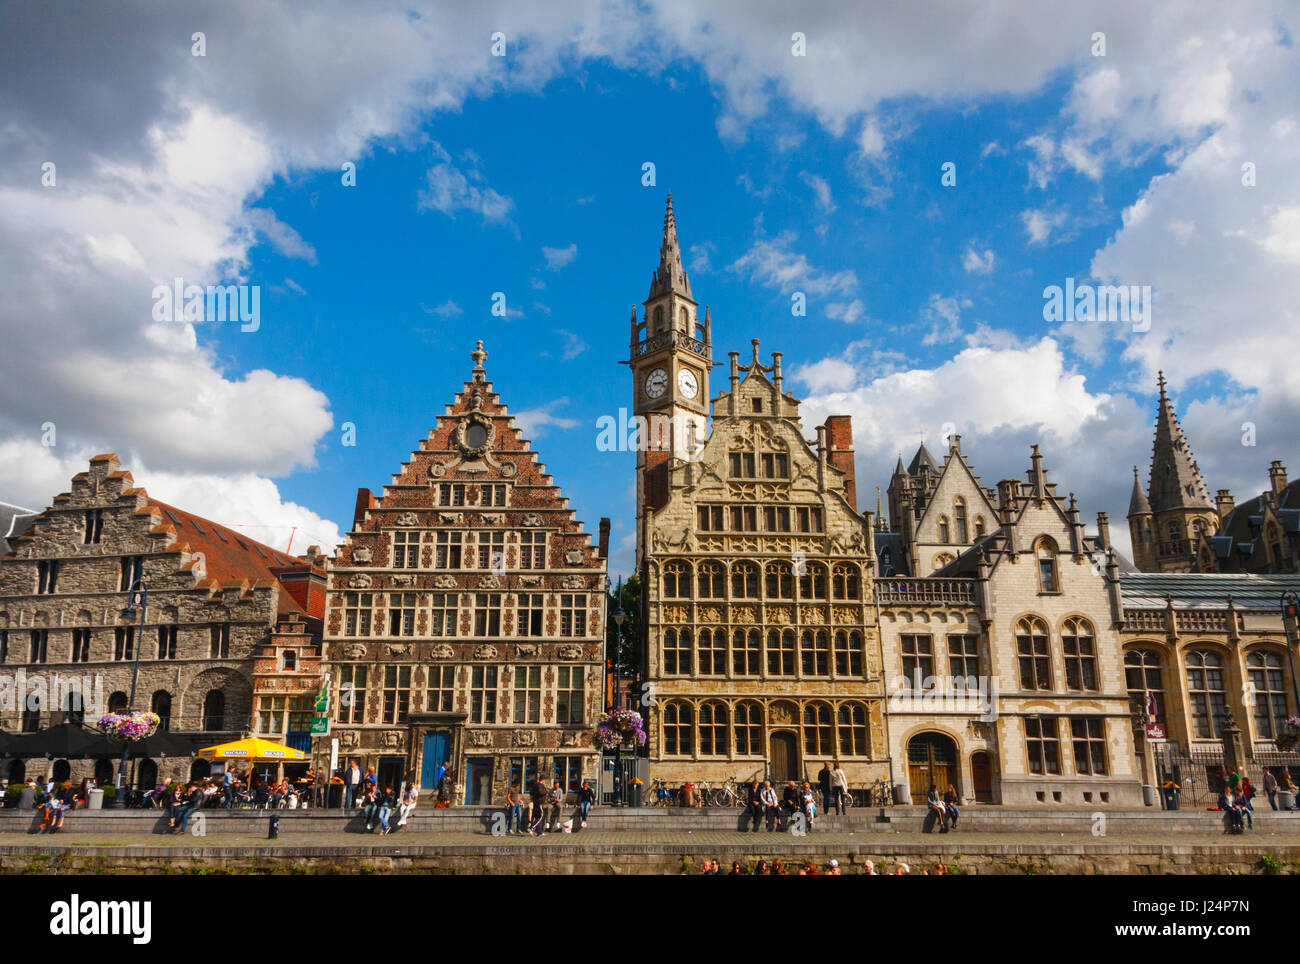 Ansicht der Graslei (Gras Quay) mit mittelalterlichen Gebäuden und nicht identifizierten Touristen unter einem blauen Himmel mit Wolken. Gent, Belgien. Stockfoto